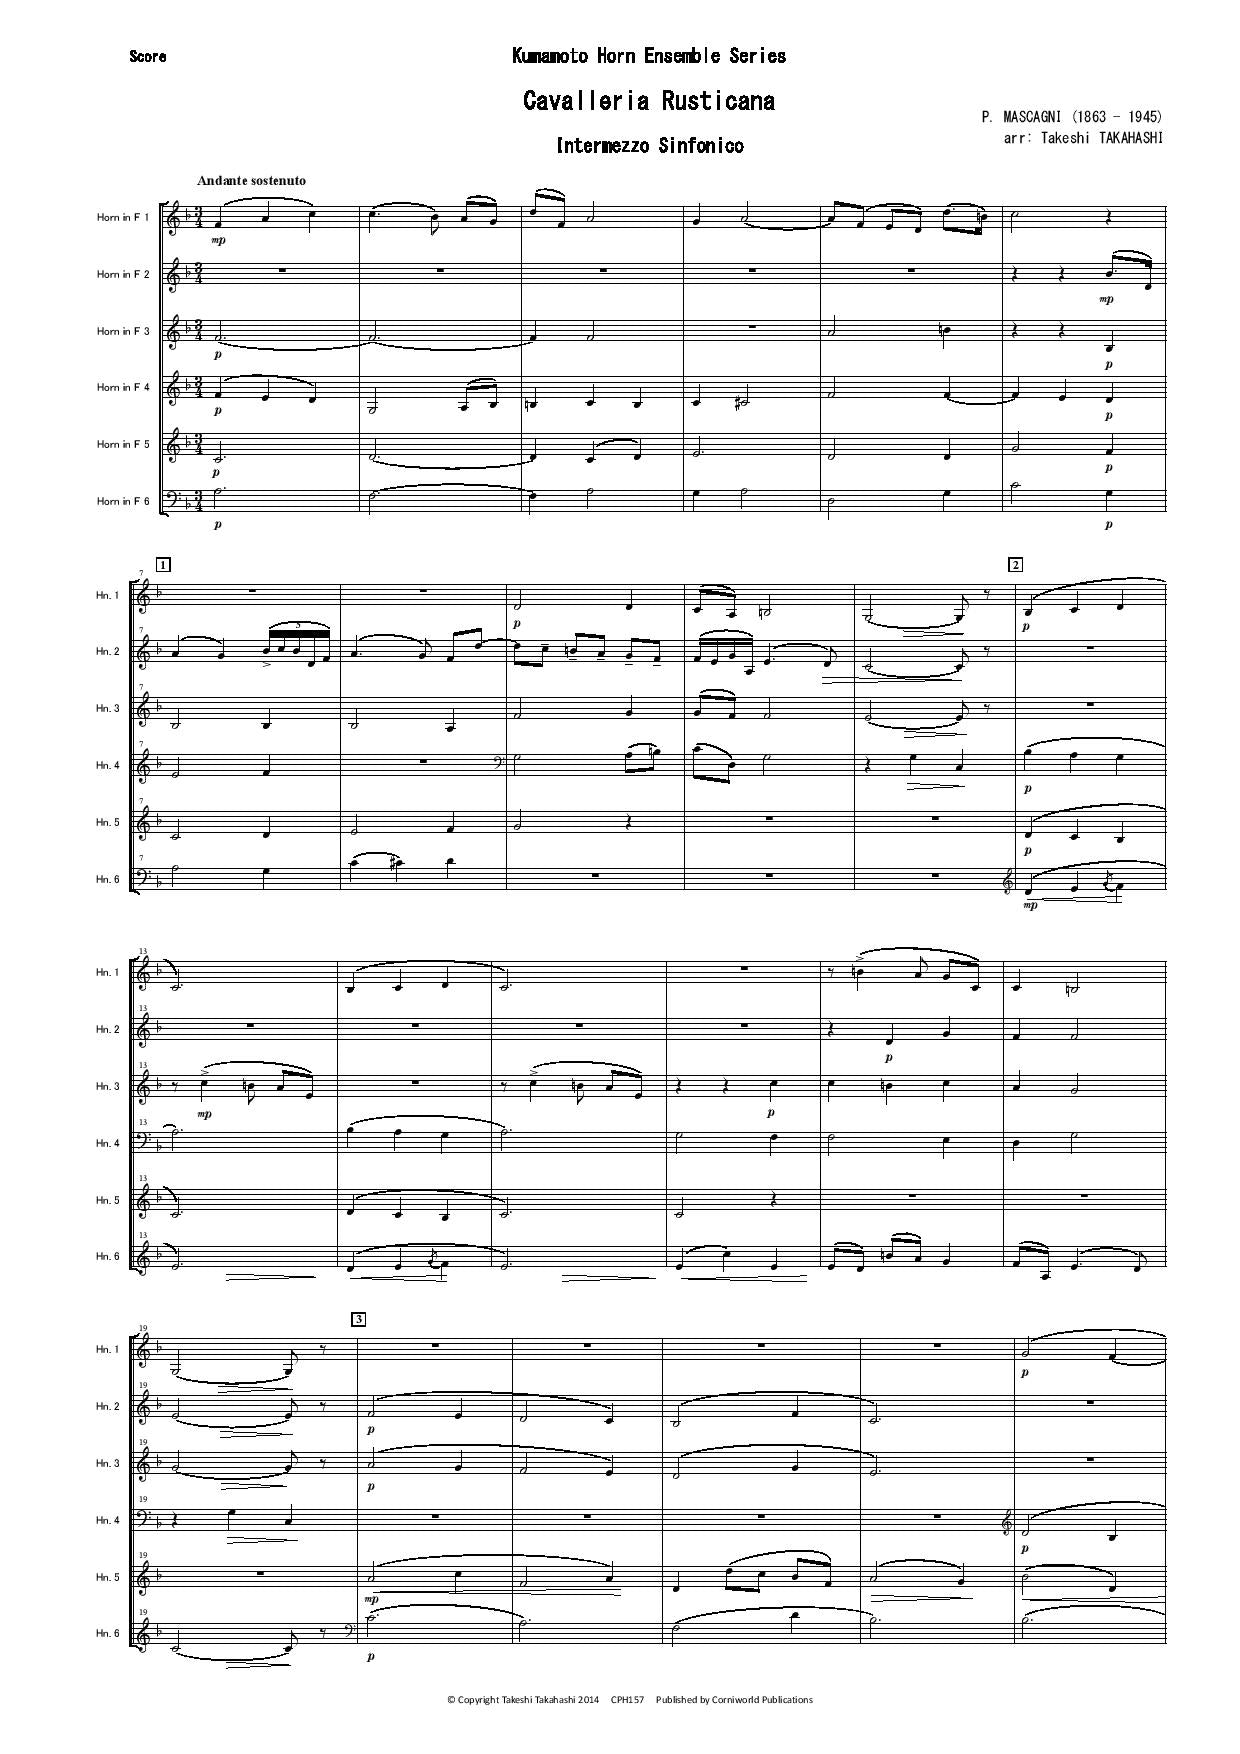 Intermezzo Sinfonico from Cavalleria Rusticana CPH157